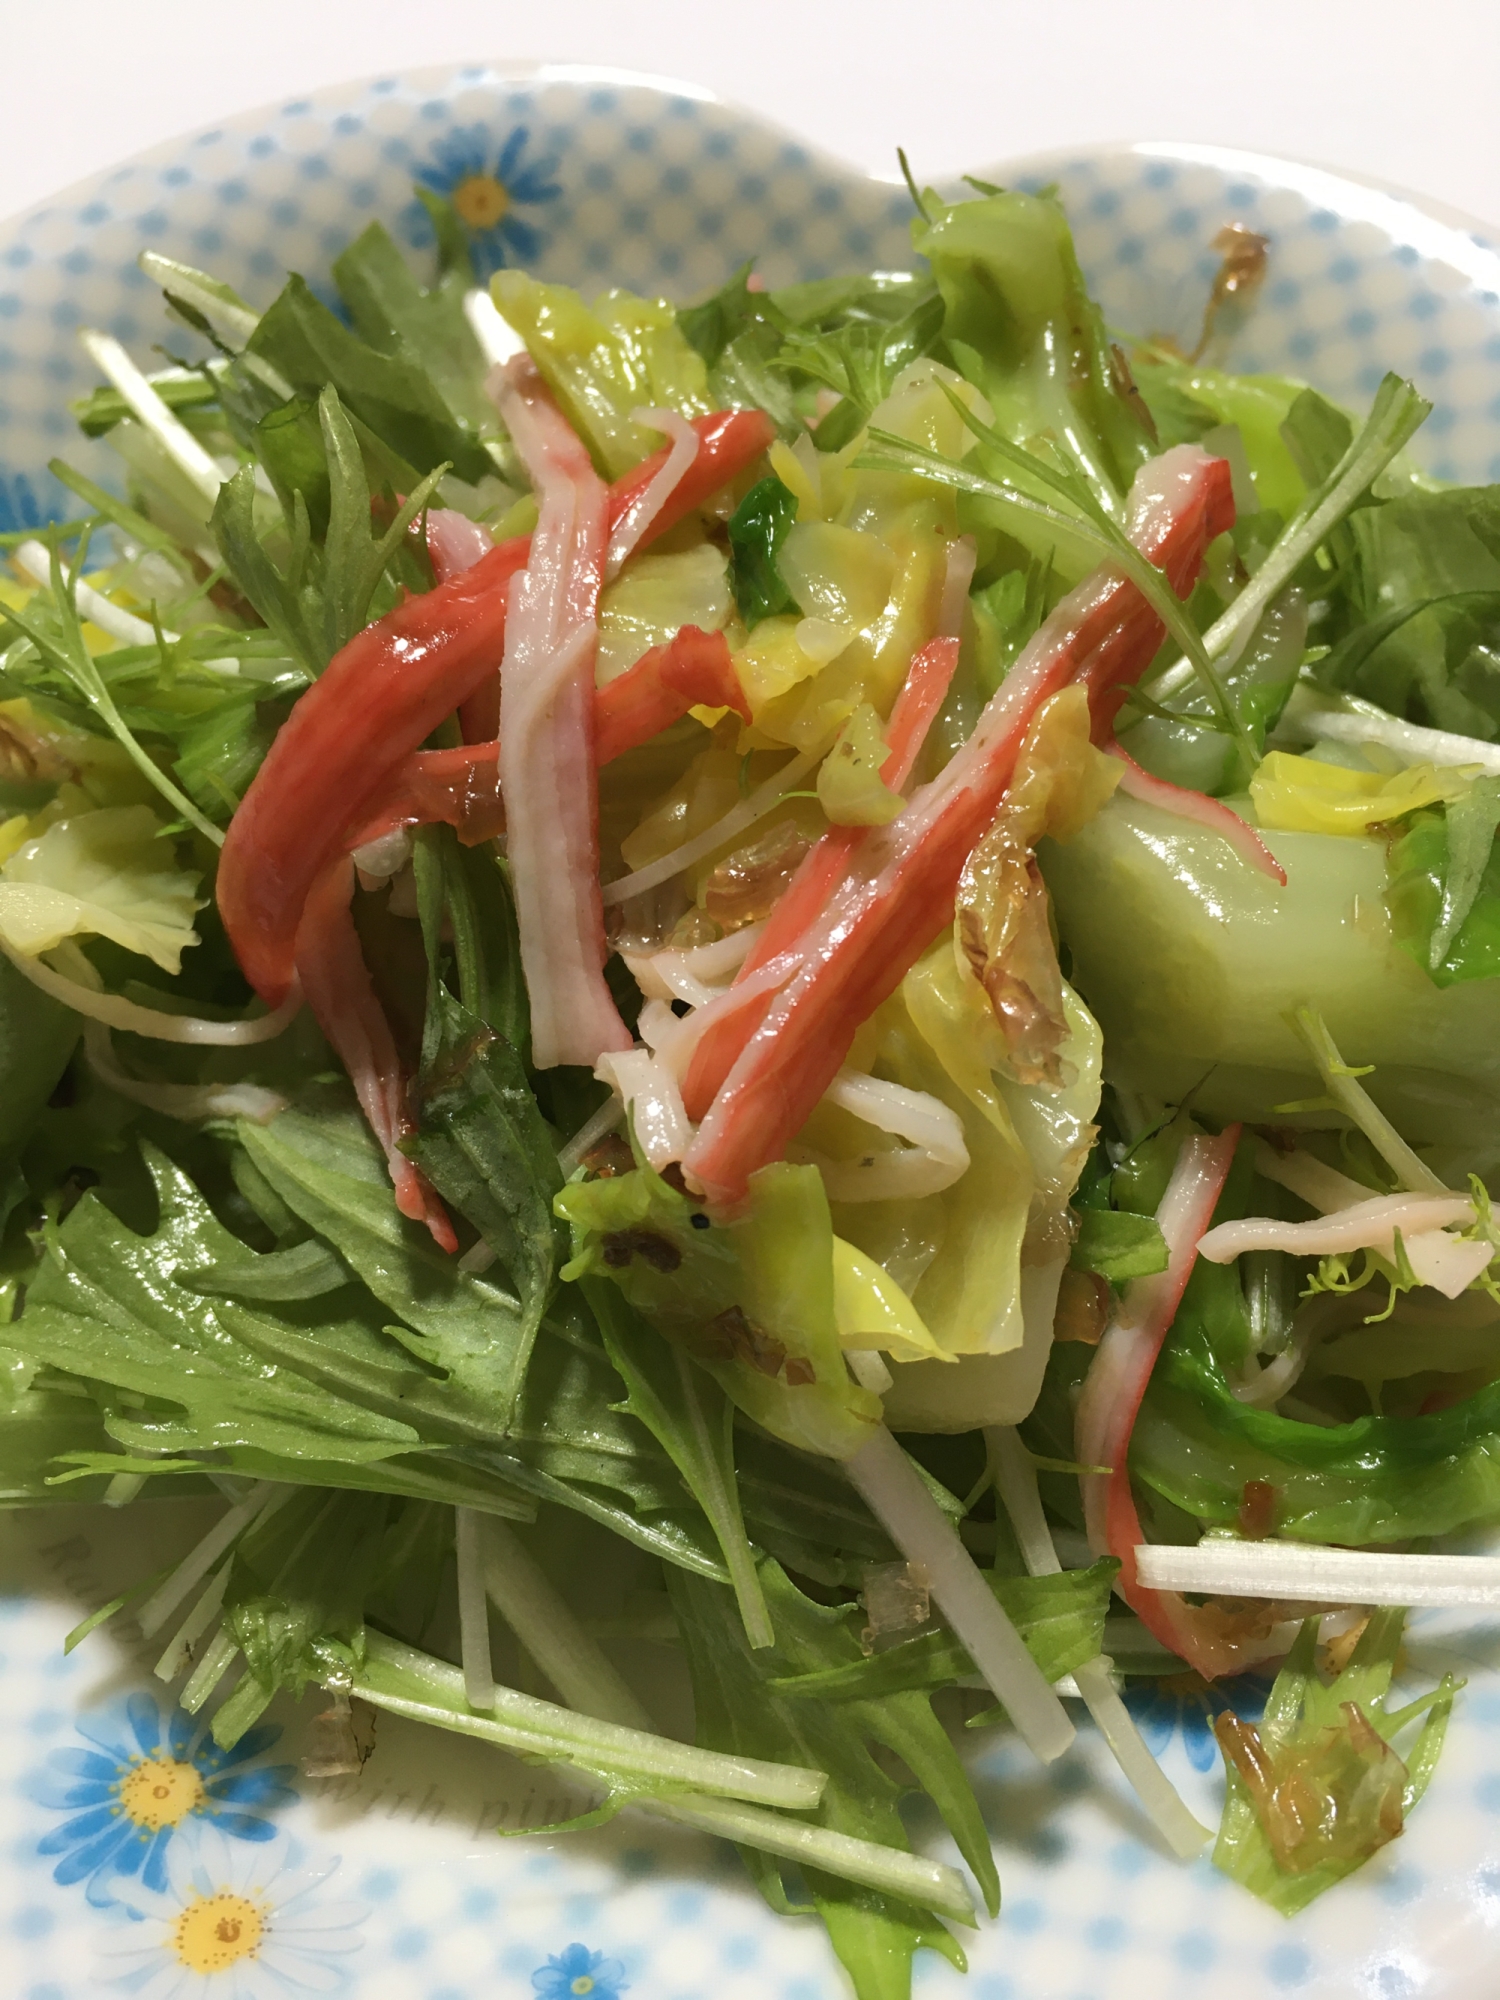 春キャベツと水菜のサラダ